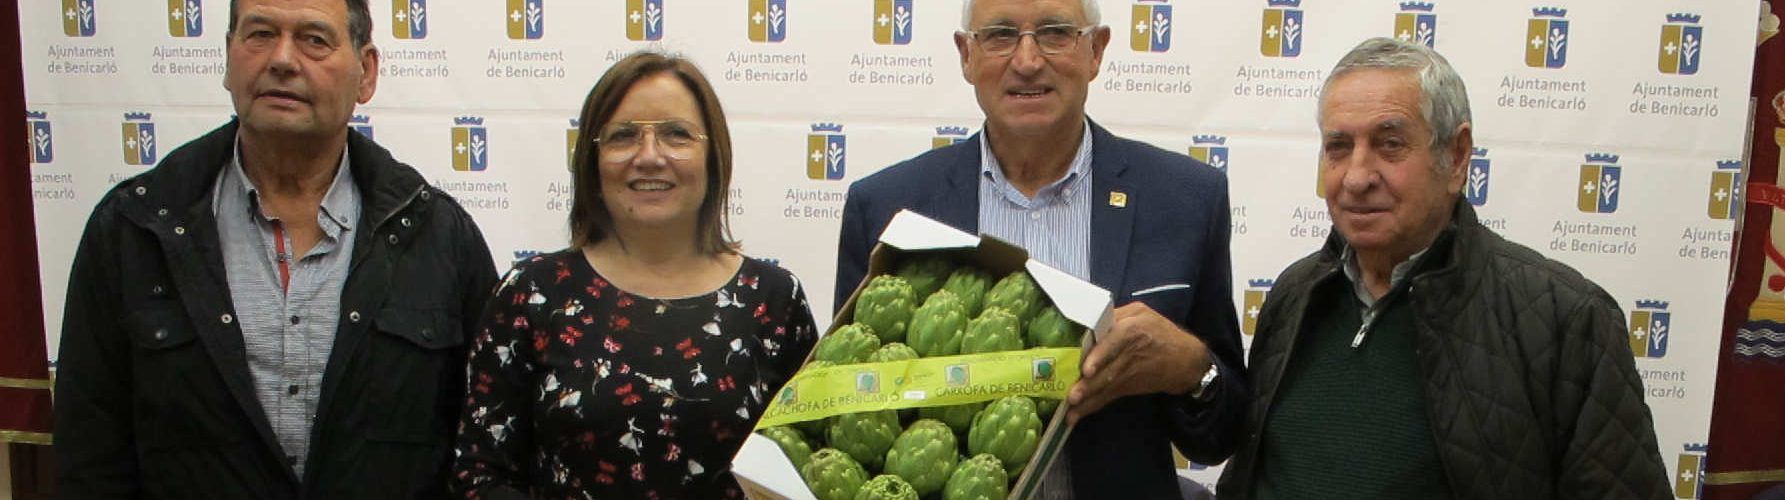 Benicarló guardona els productors i comerciants de carxofa de Denominació d’Origen amb la Carxofa d’Or 2019